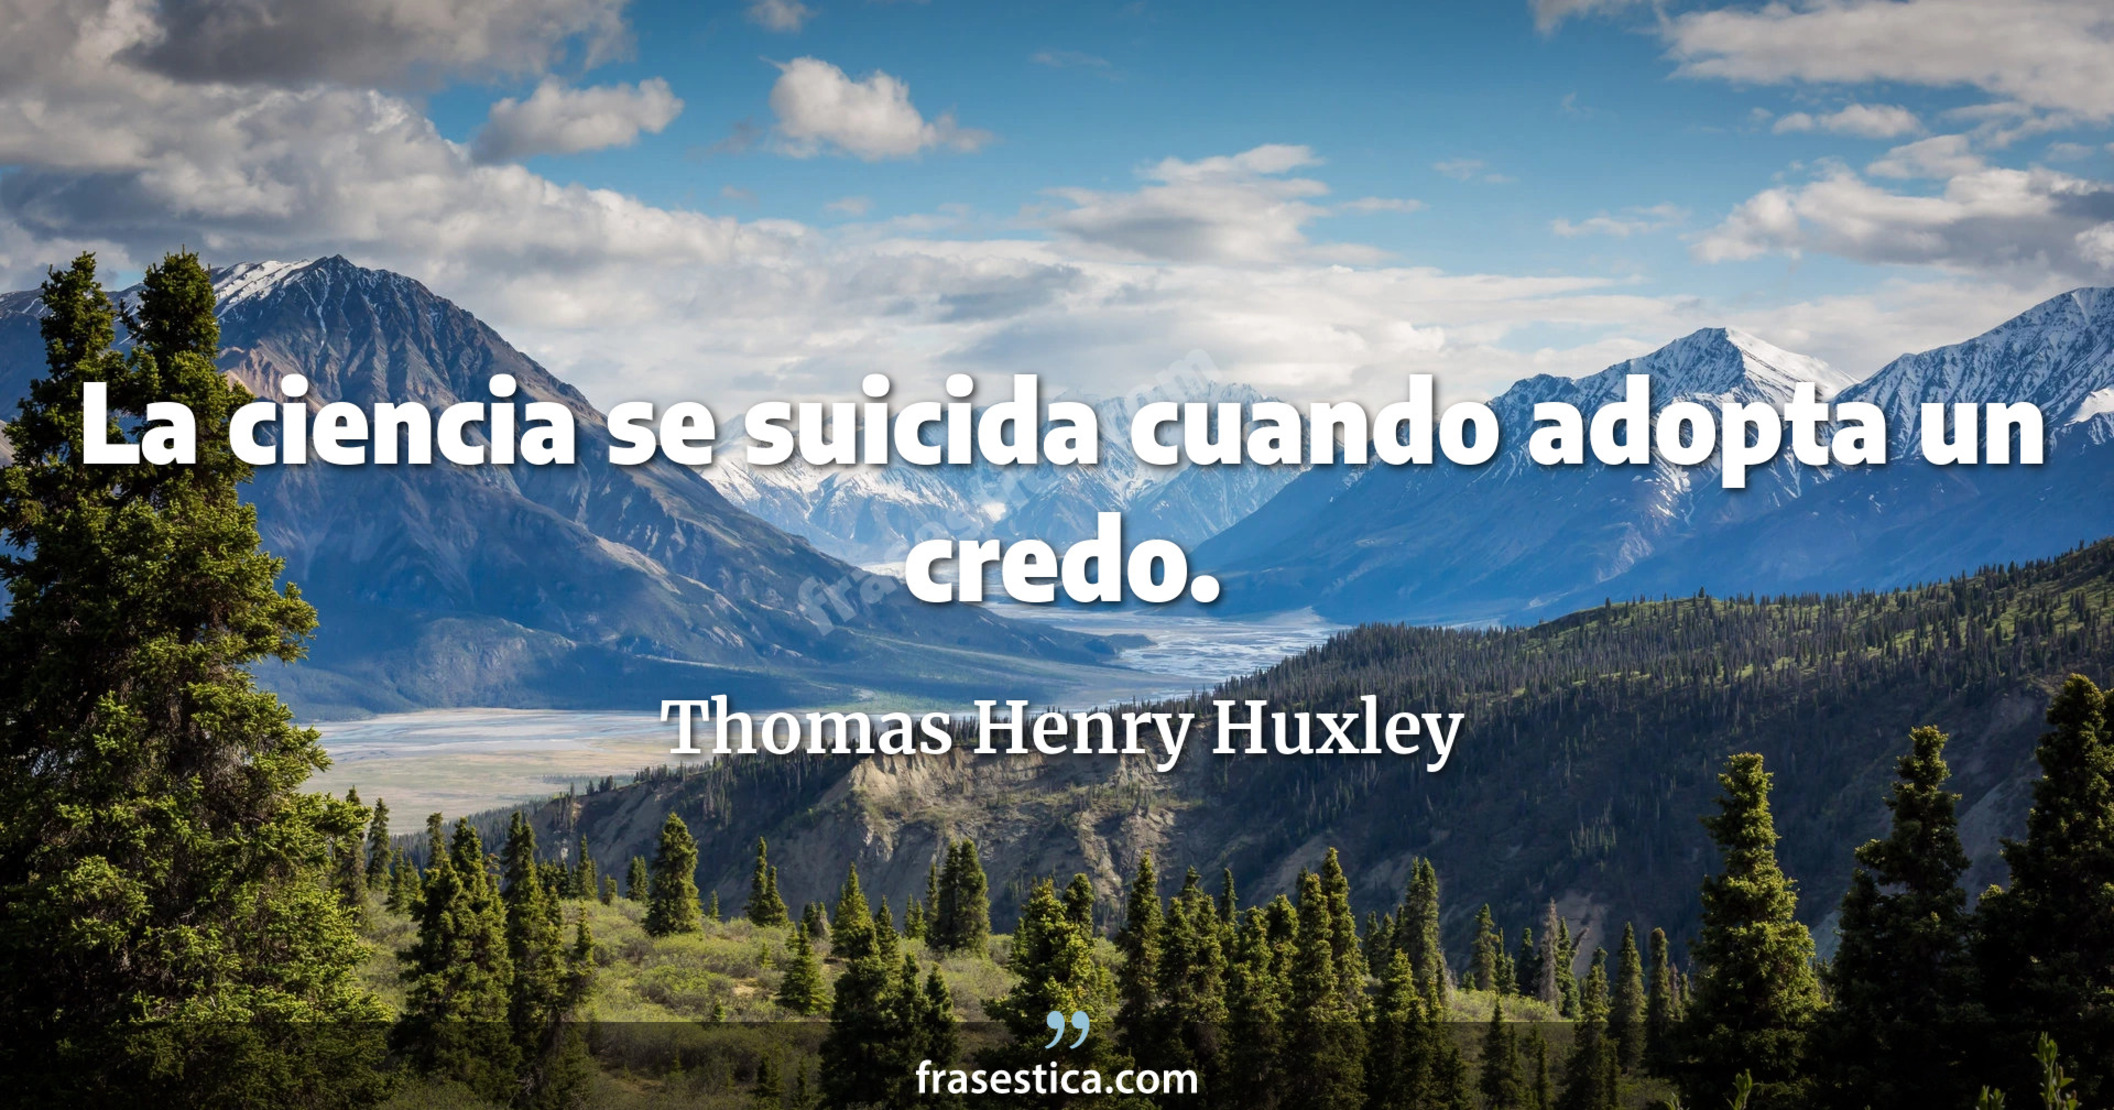 La ciencia se suicida cuando adopta un credo. - Thomas Henry Huxley